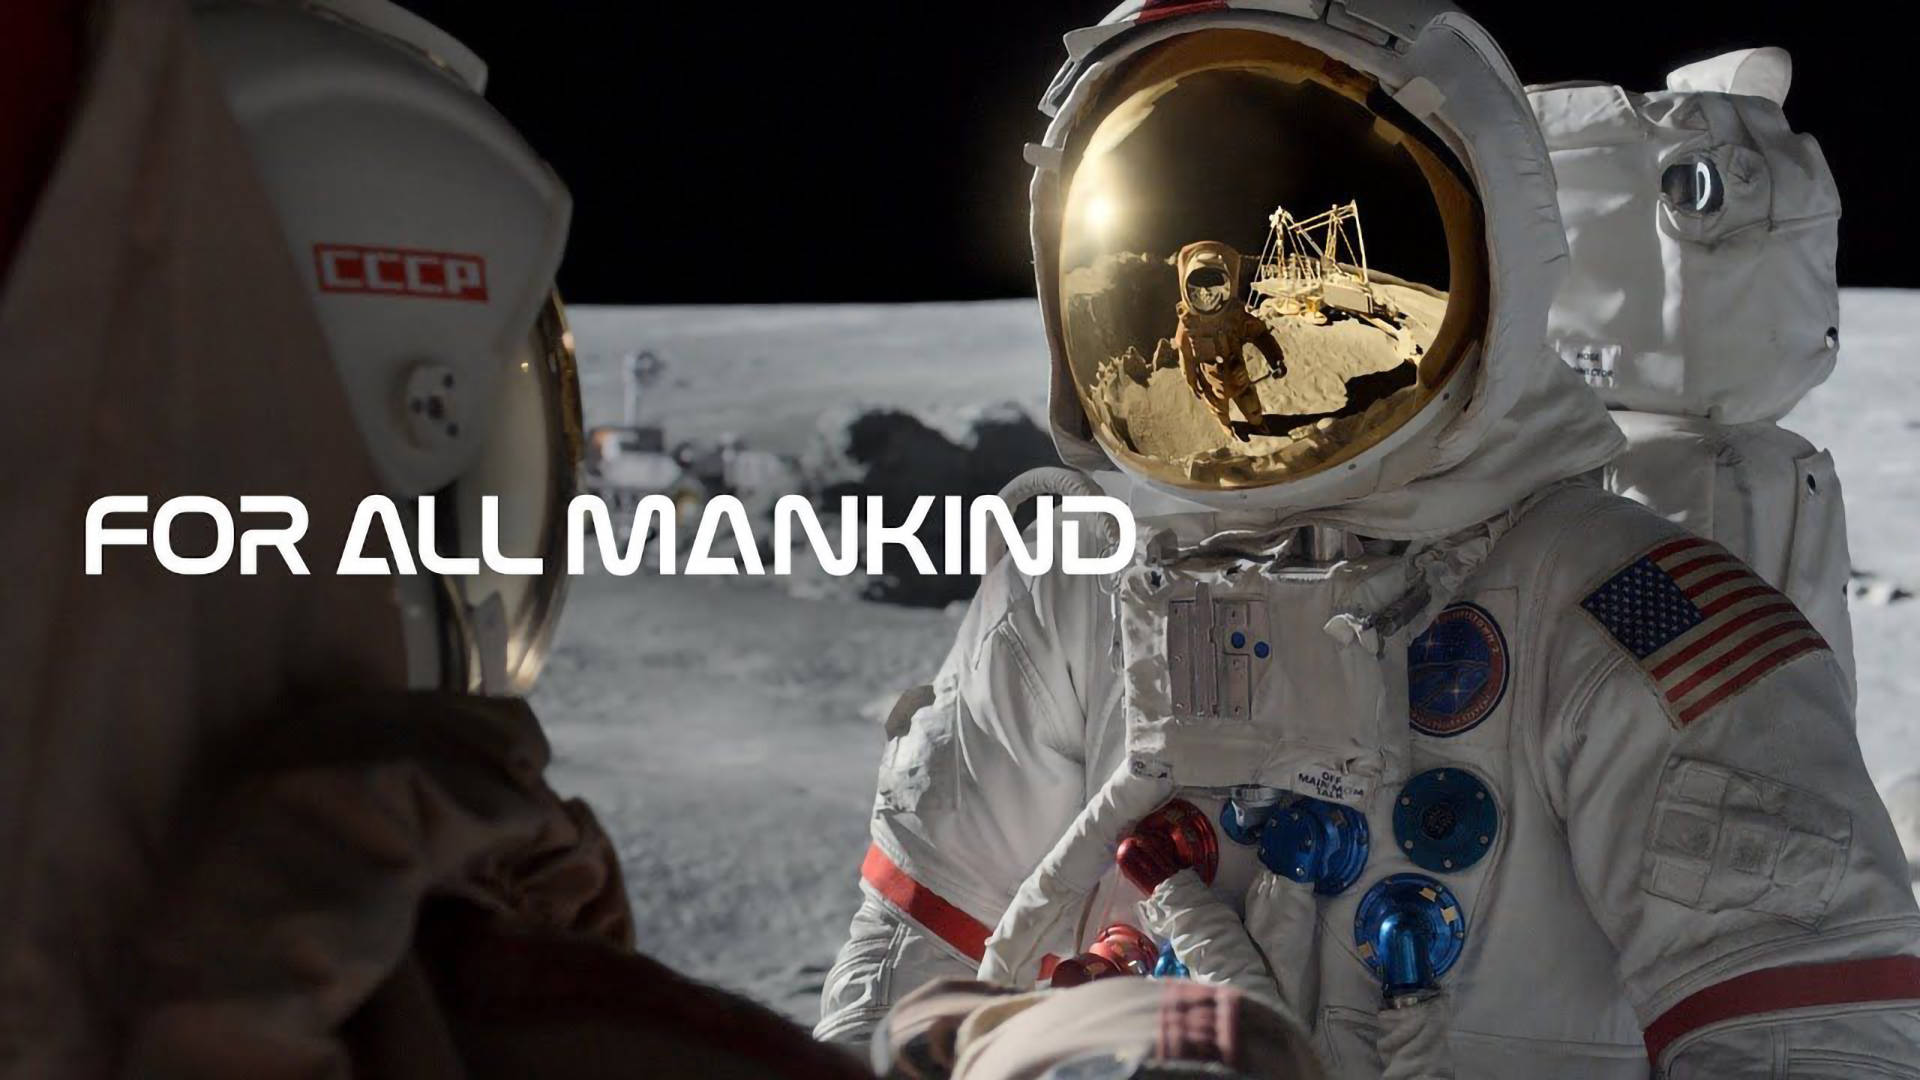 Füralle Menschen Zwei Astronauten Auf Dem Mond Wallpaper